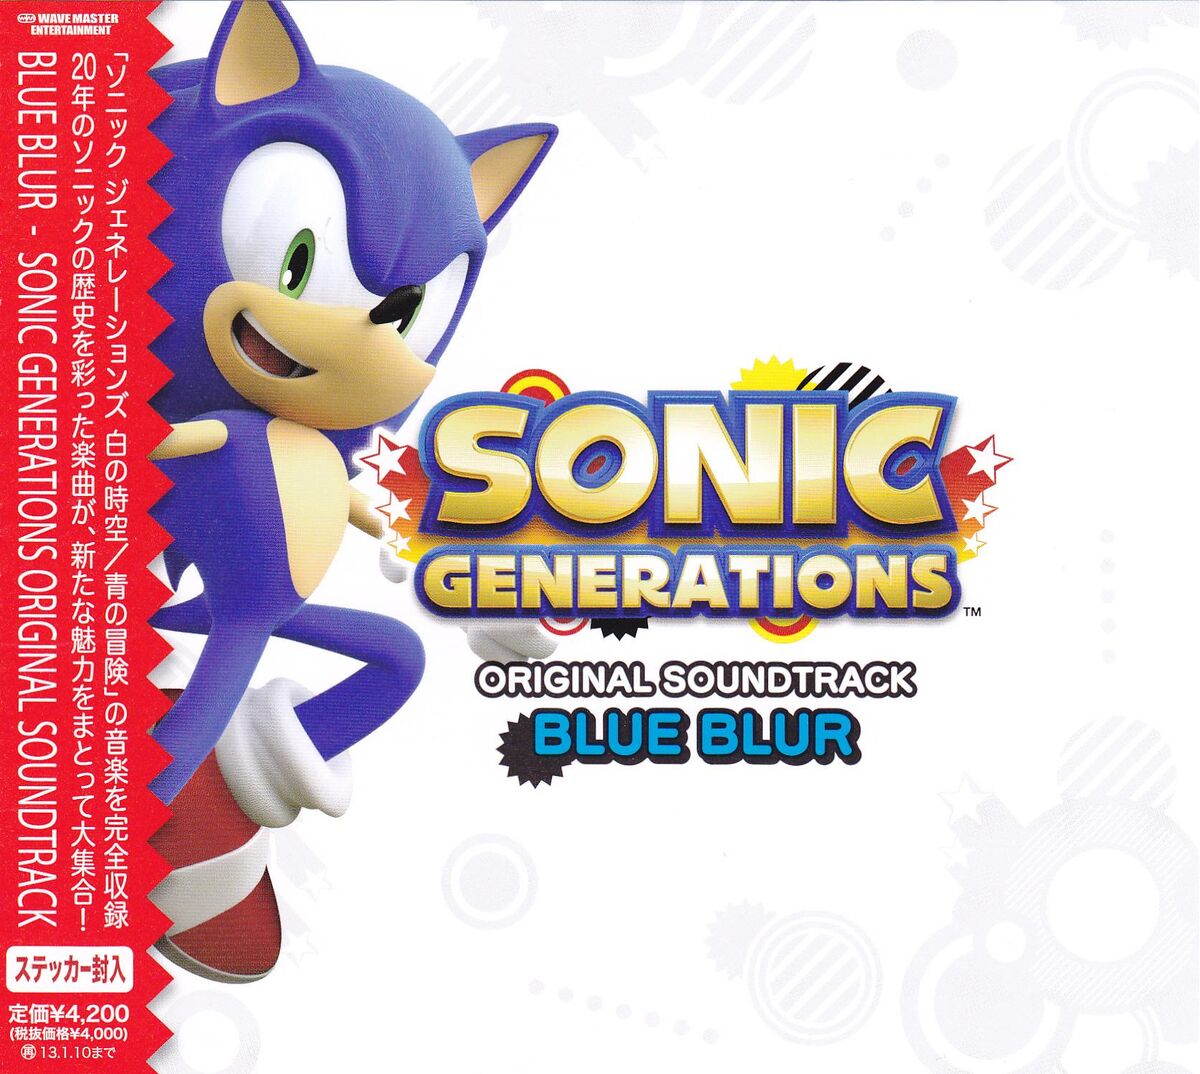 34,230円ソニックジェネレーションズ サウンドトラック BLUE BLUR